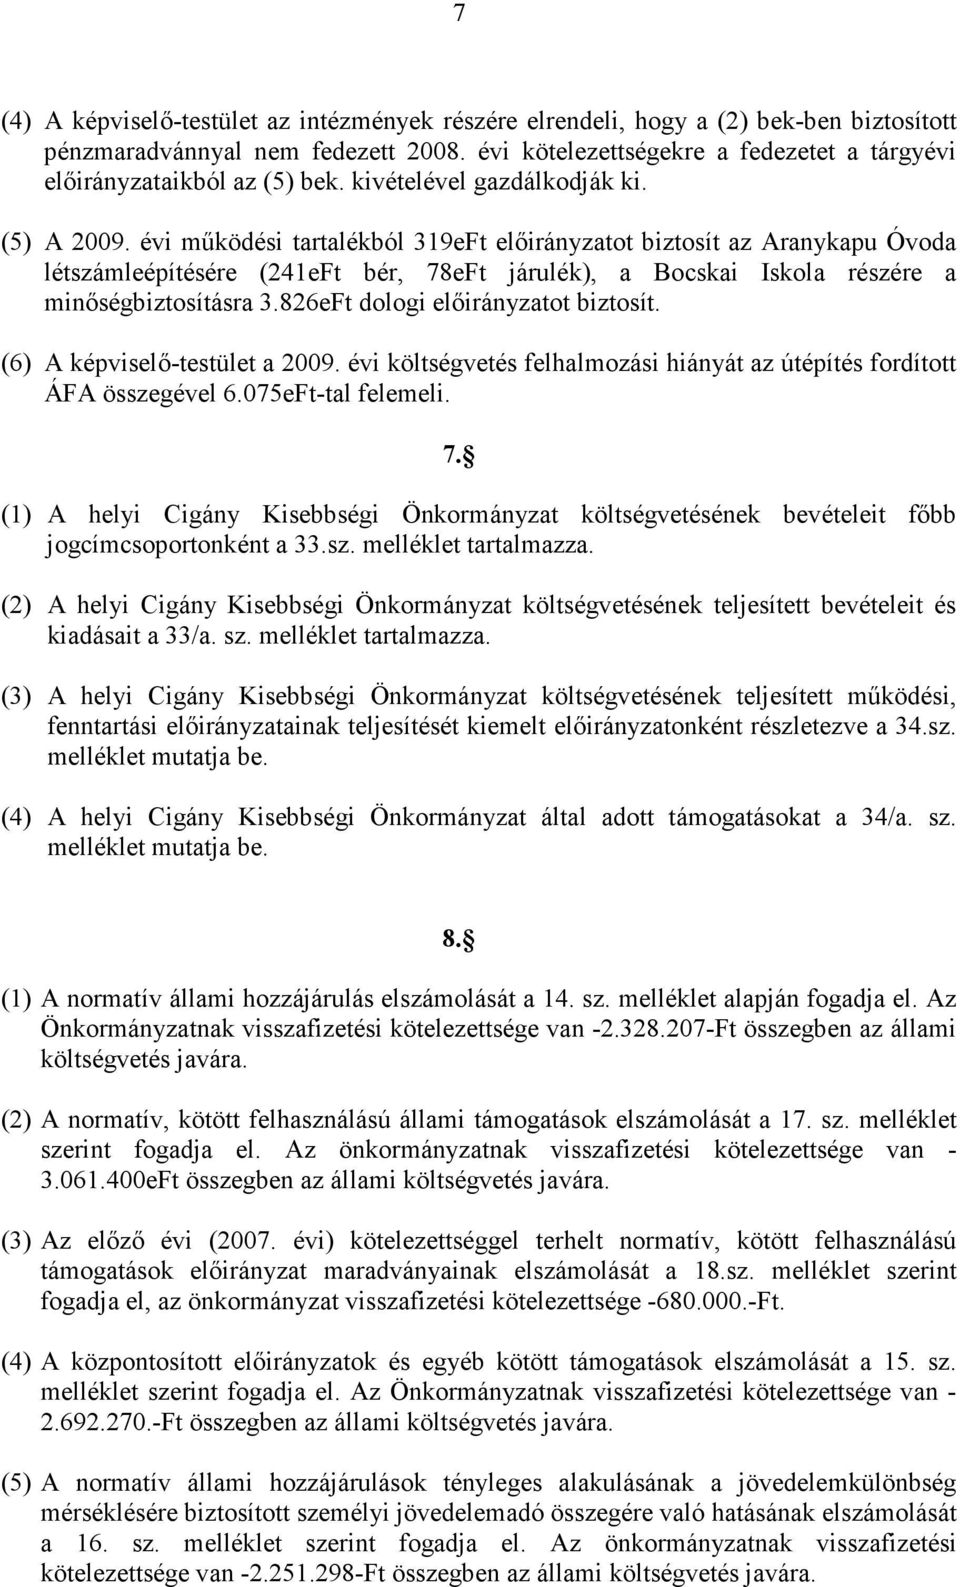 évi mőködési tartalékból 319eFt elıirányzatot biztosít az Aranykapu Óvoda létszámleépítésére (241eFt bér, 78eFt járulék), a Bocskai Iskola részére a minıségbiztosításra 3.